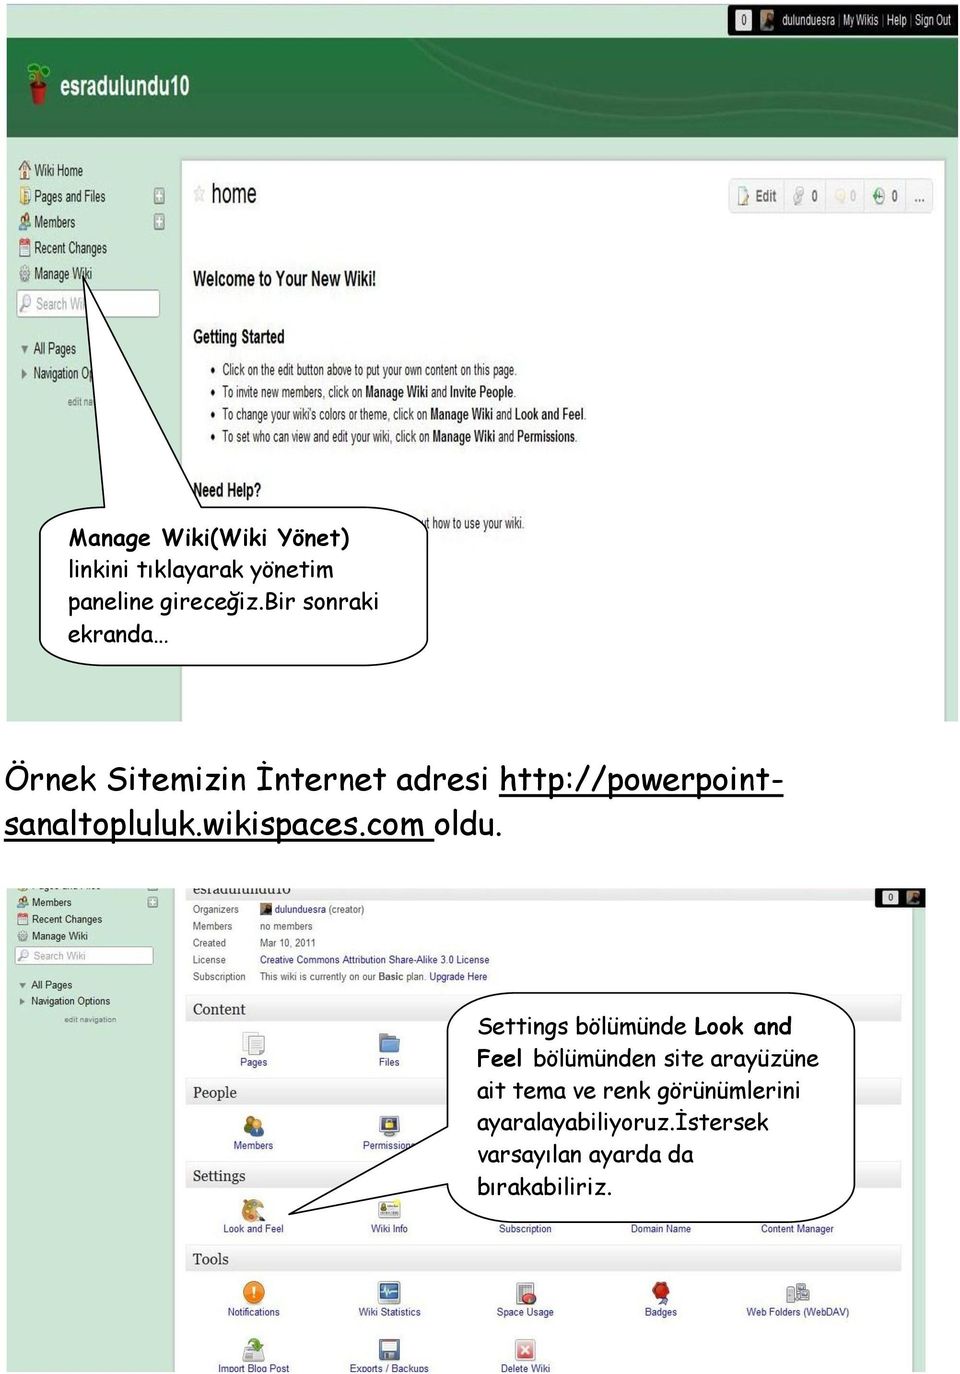 http://powerpointsanaltopluluk.wikispaces.com oldu.